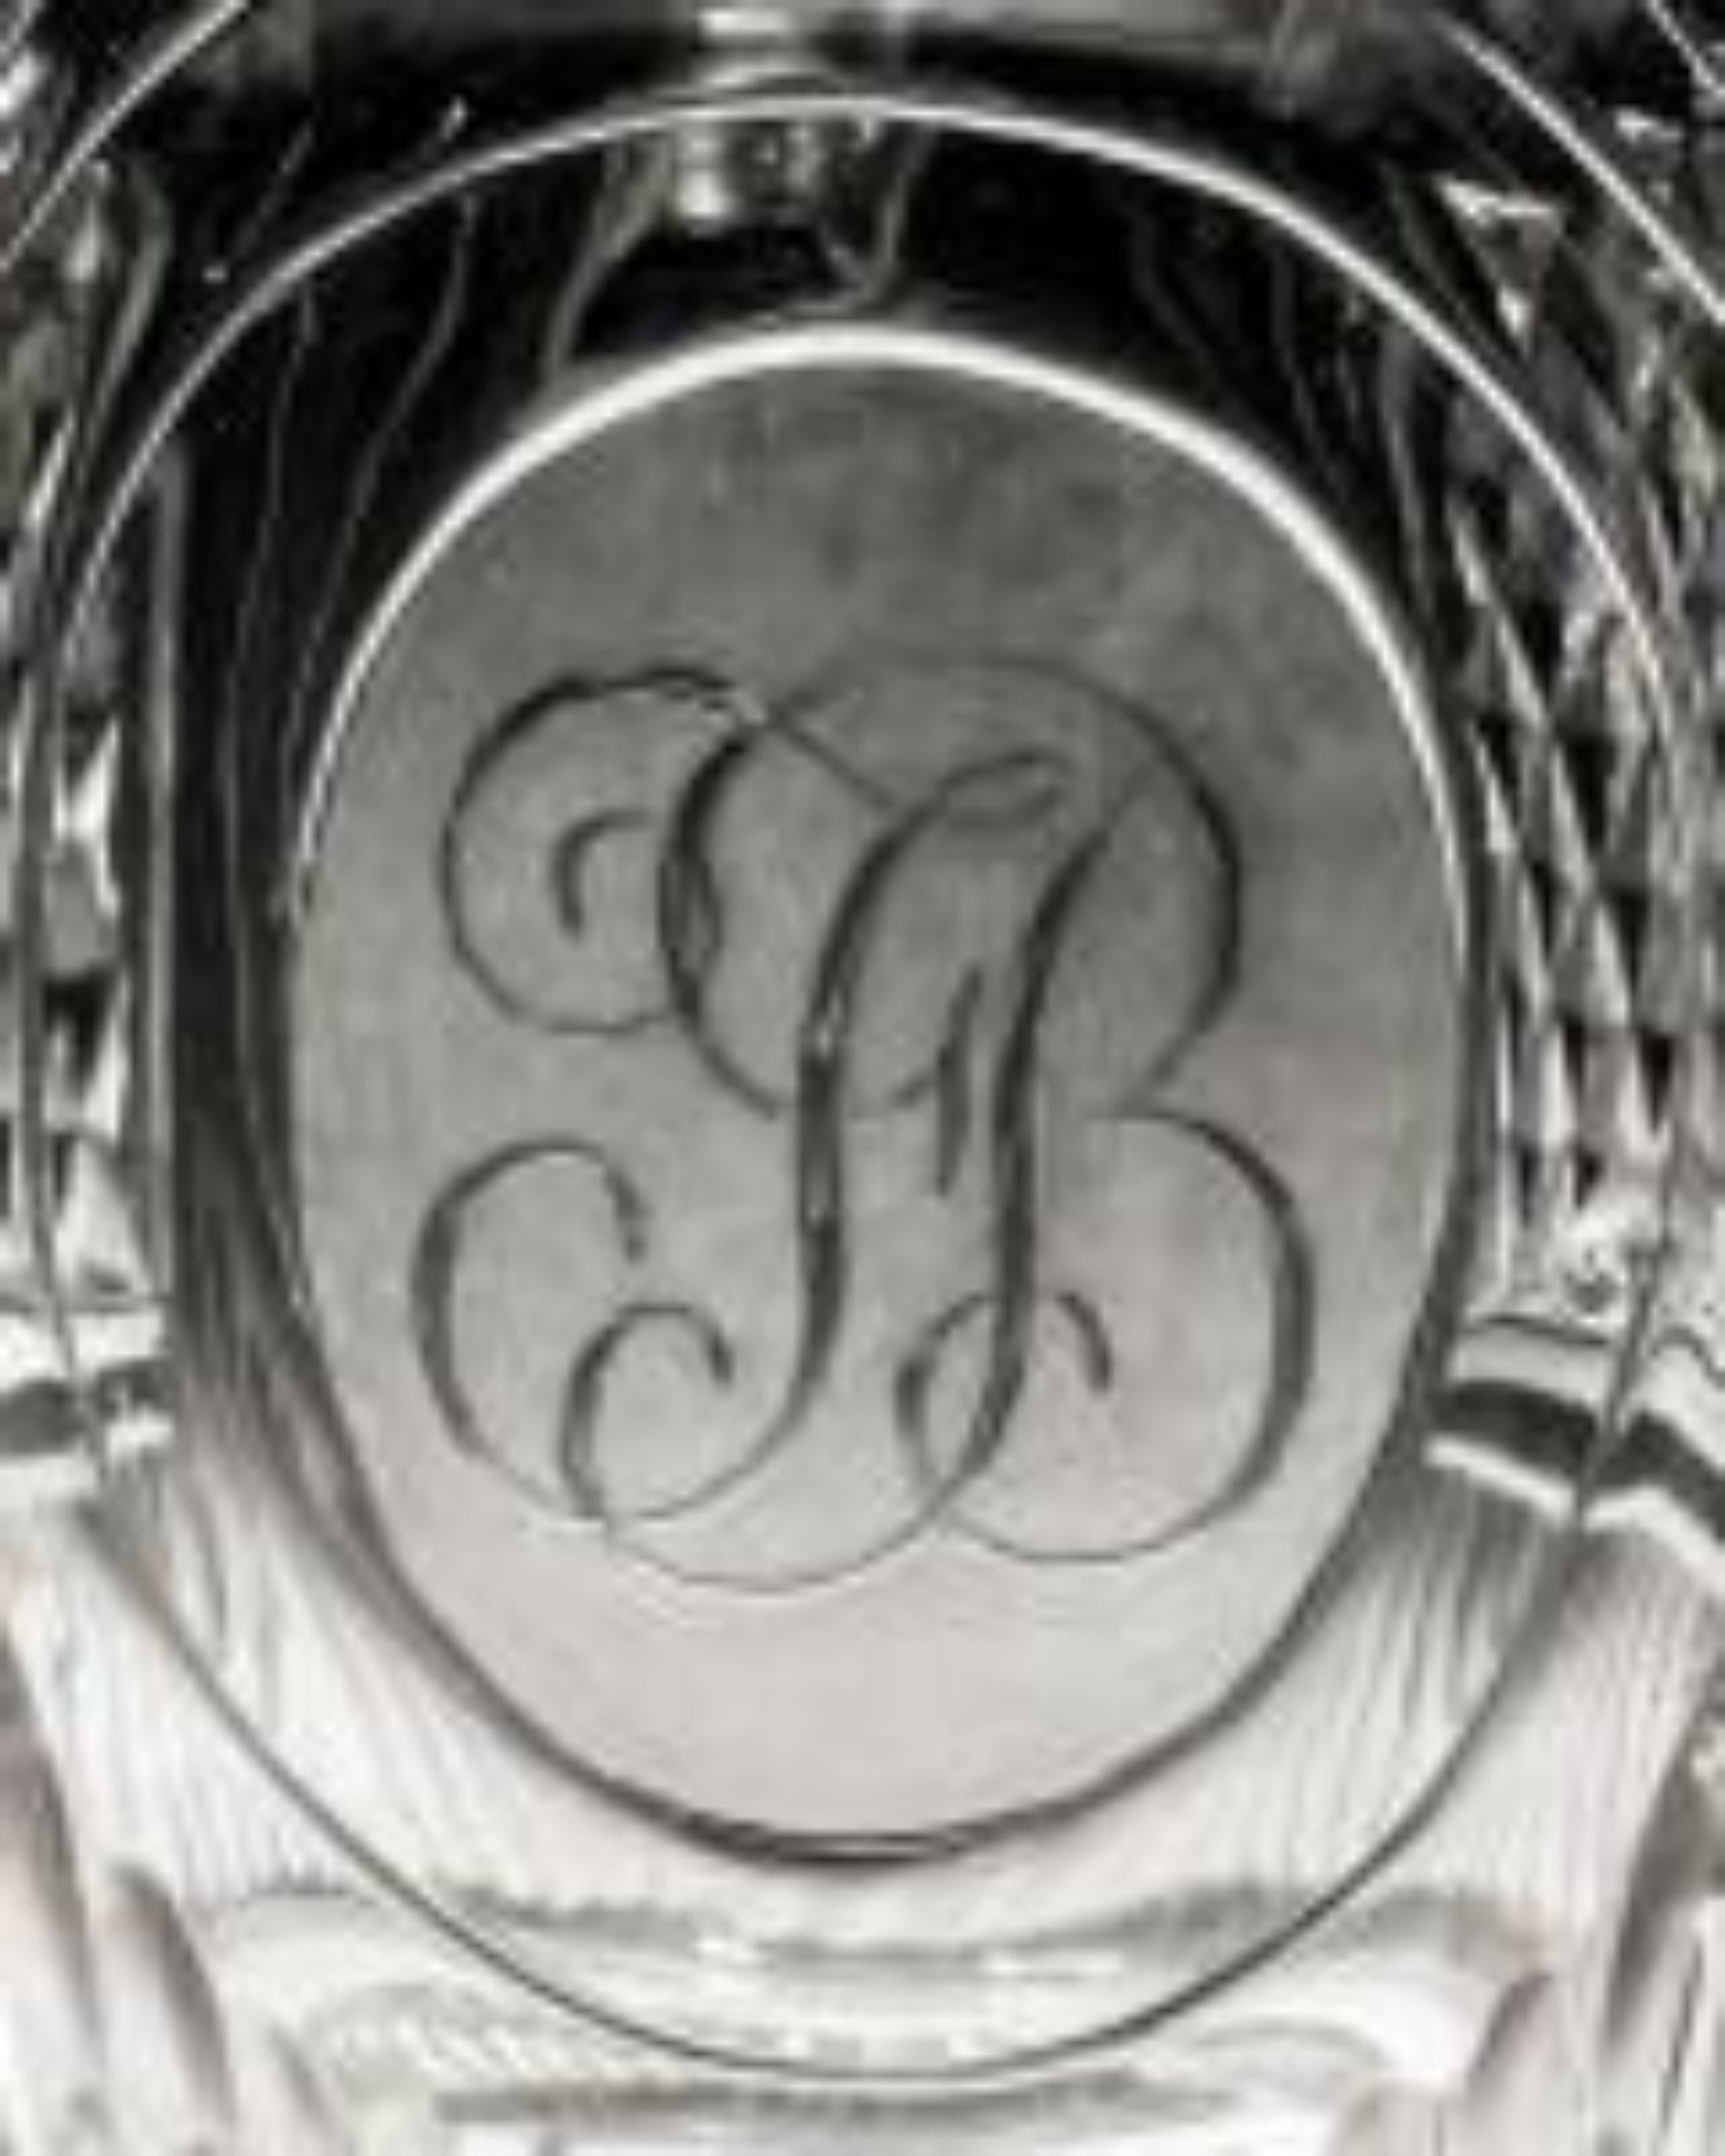 Un beau pichet à eau de la Régence, taillé en diamant, avec les initiales gravées JB.
Angleterre, vers 1810.

Dimensions :
Hauteur : 18,5 cm (7 1/4